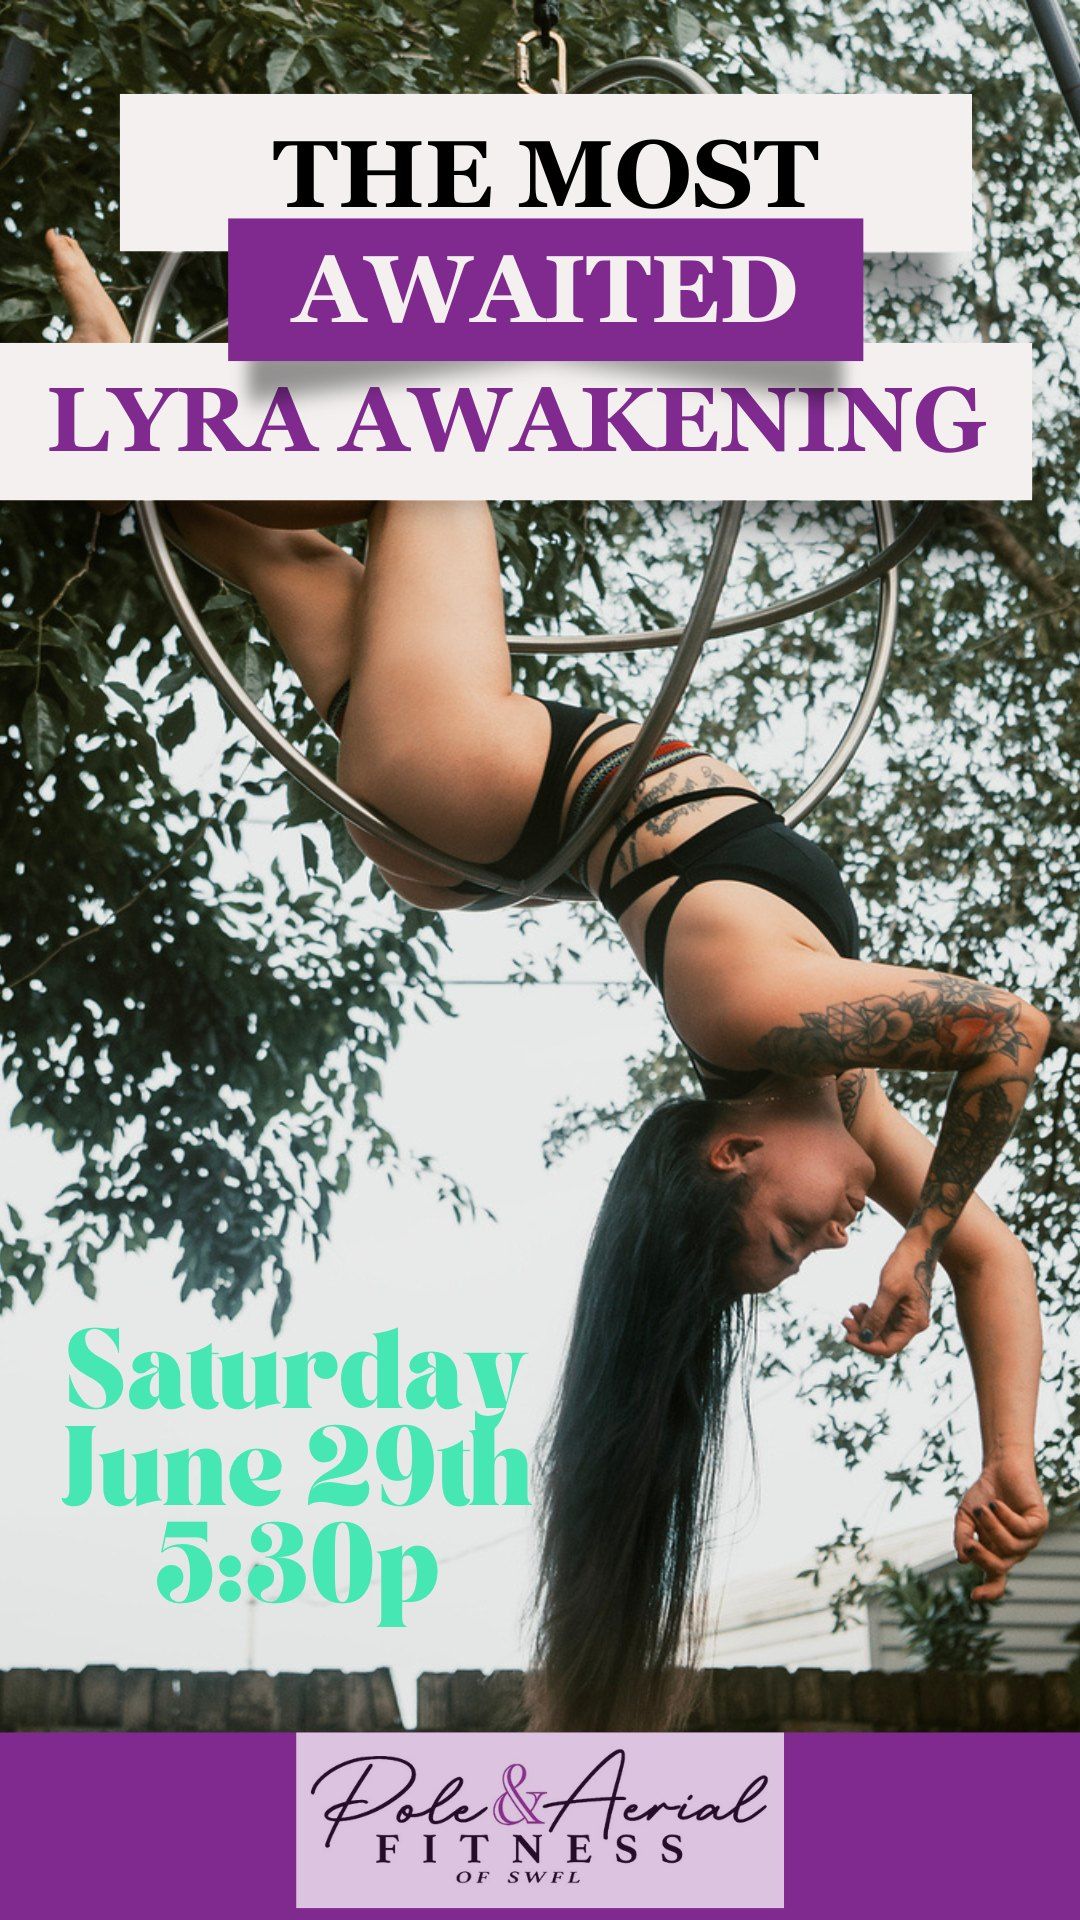 Lyra Awakening Workshop